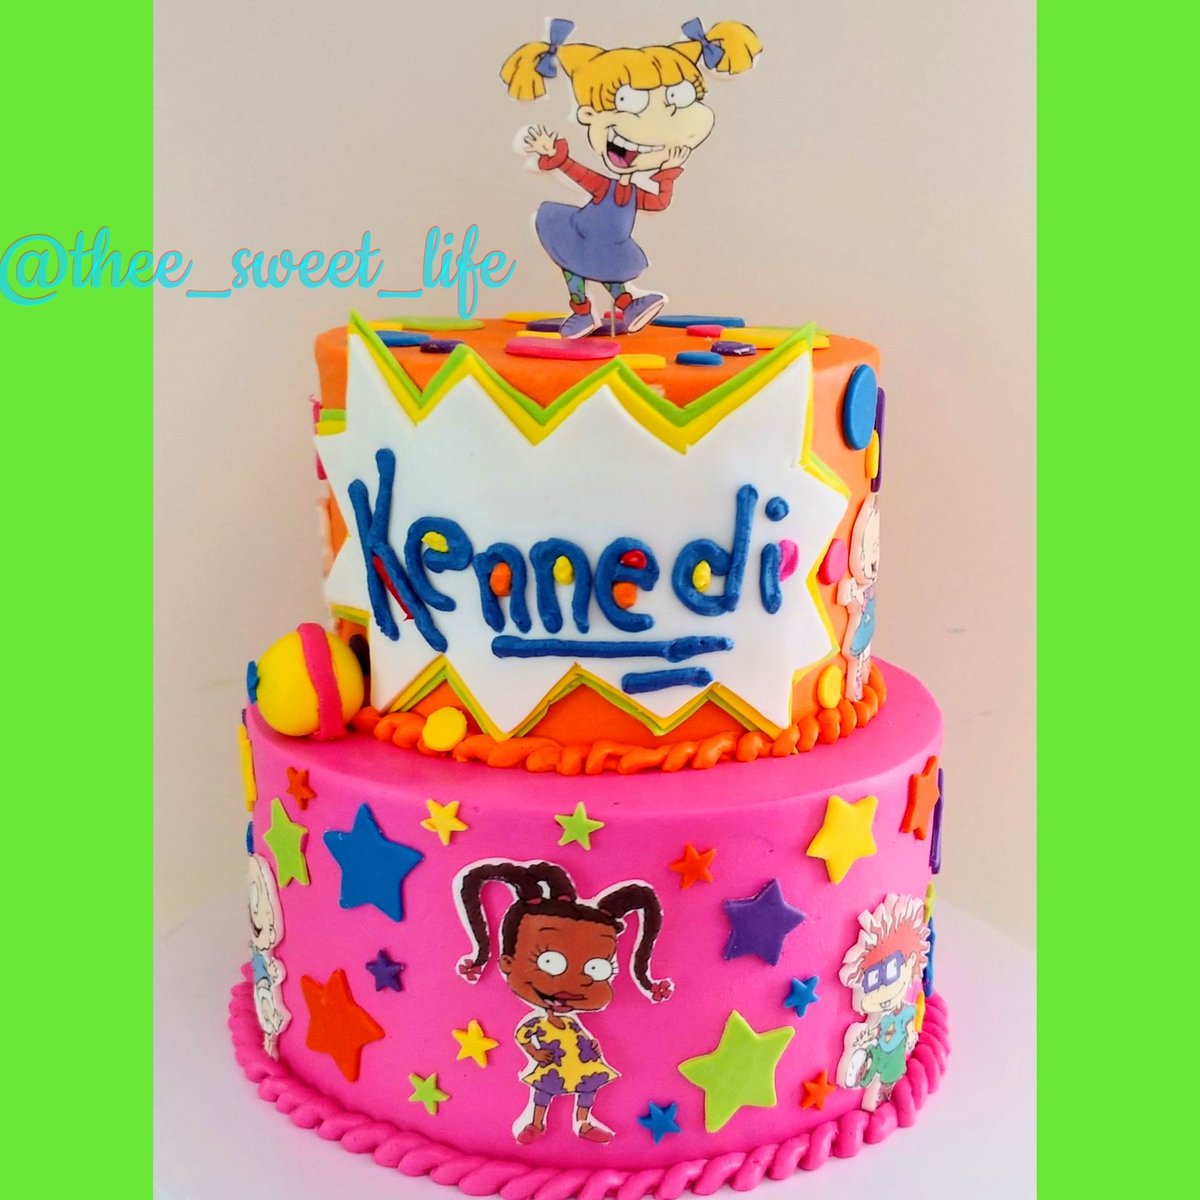 Ο χρήστης Tamisha στο Twitter: "RugRats cake #rugrats #Nickelodeon #angelica #tommiepickles #SusieCarmichael #PhilandLill #chuckie #RT #cakeboss #supportsmallbusiness https://t.co/EsOdYgWktN" / Twitter